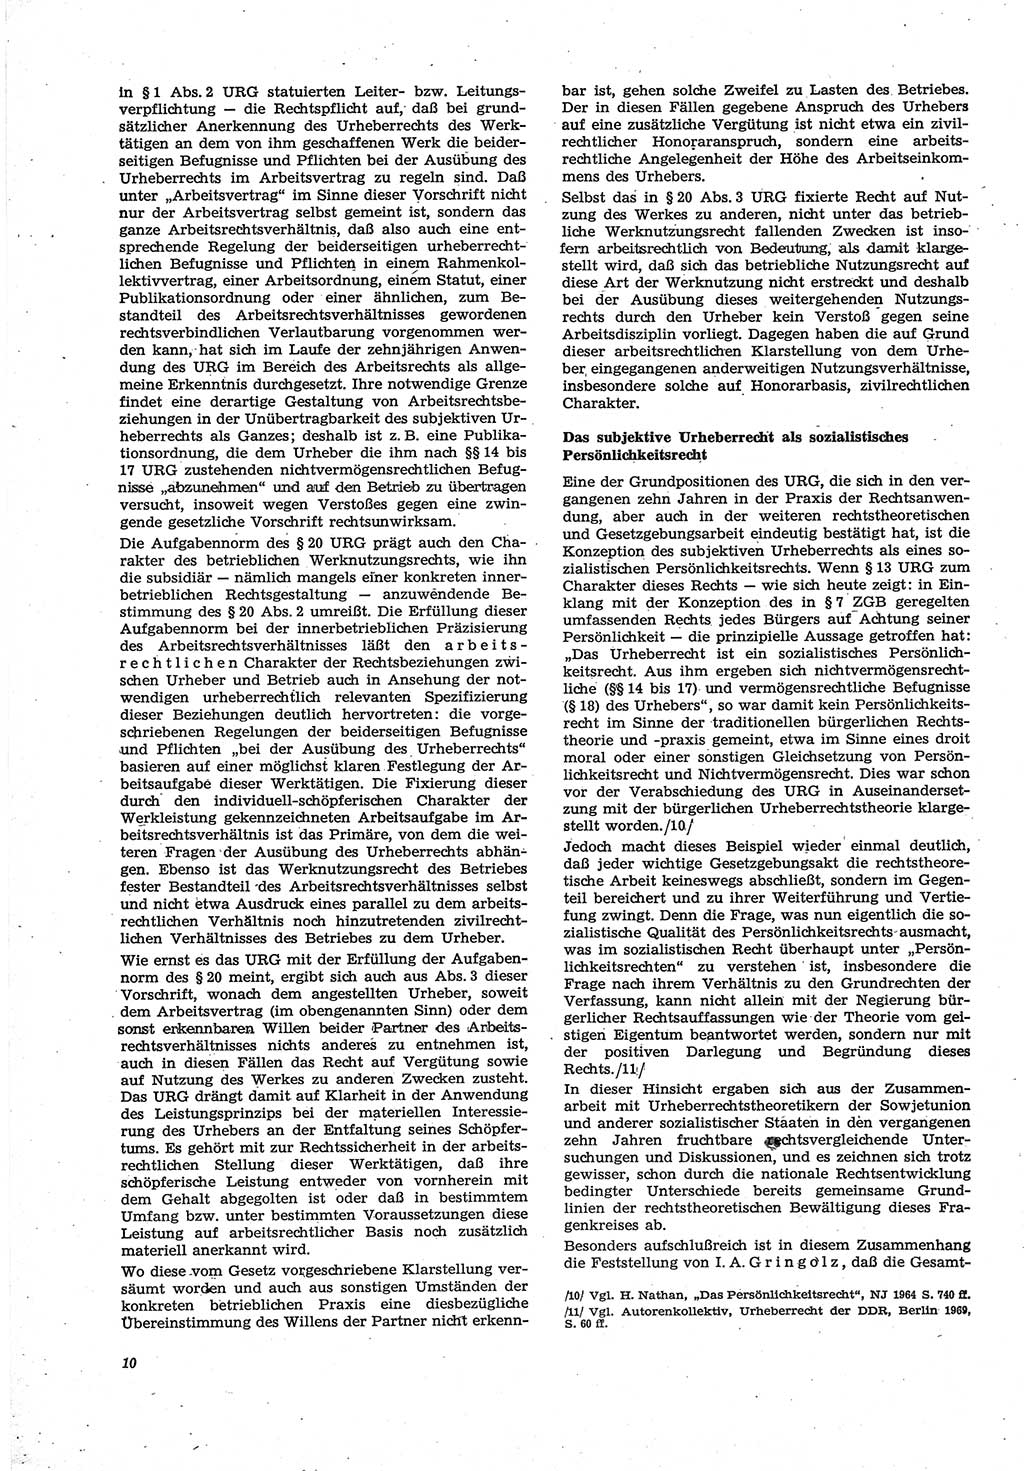 Neue Justiz (NJ), Zeitschrift für Recht und Rechtswissenschaft [Deutsche Demokratische Republik (DDR)], 30. Jahrgang 1976, Seite 10 (NJ DDR 1976, S. 10)